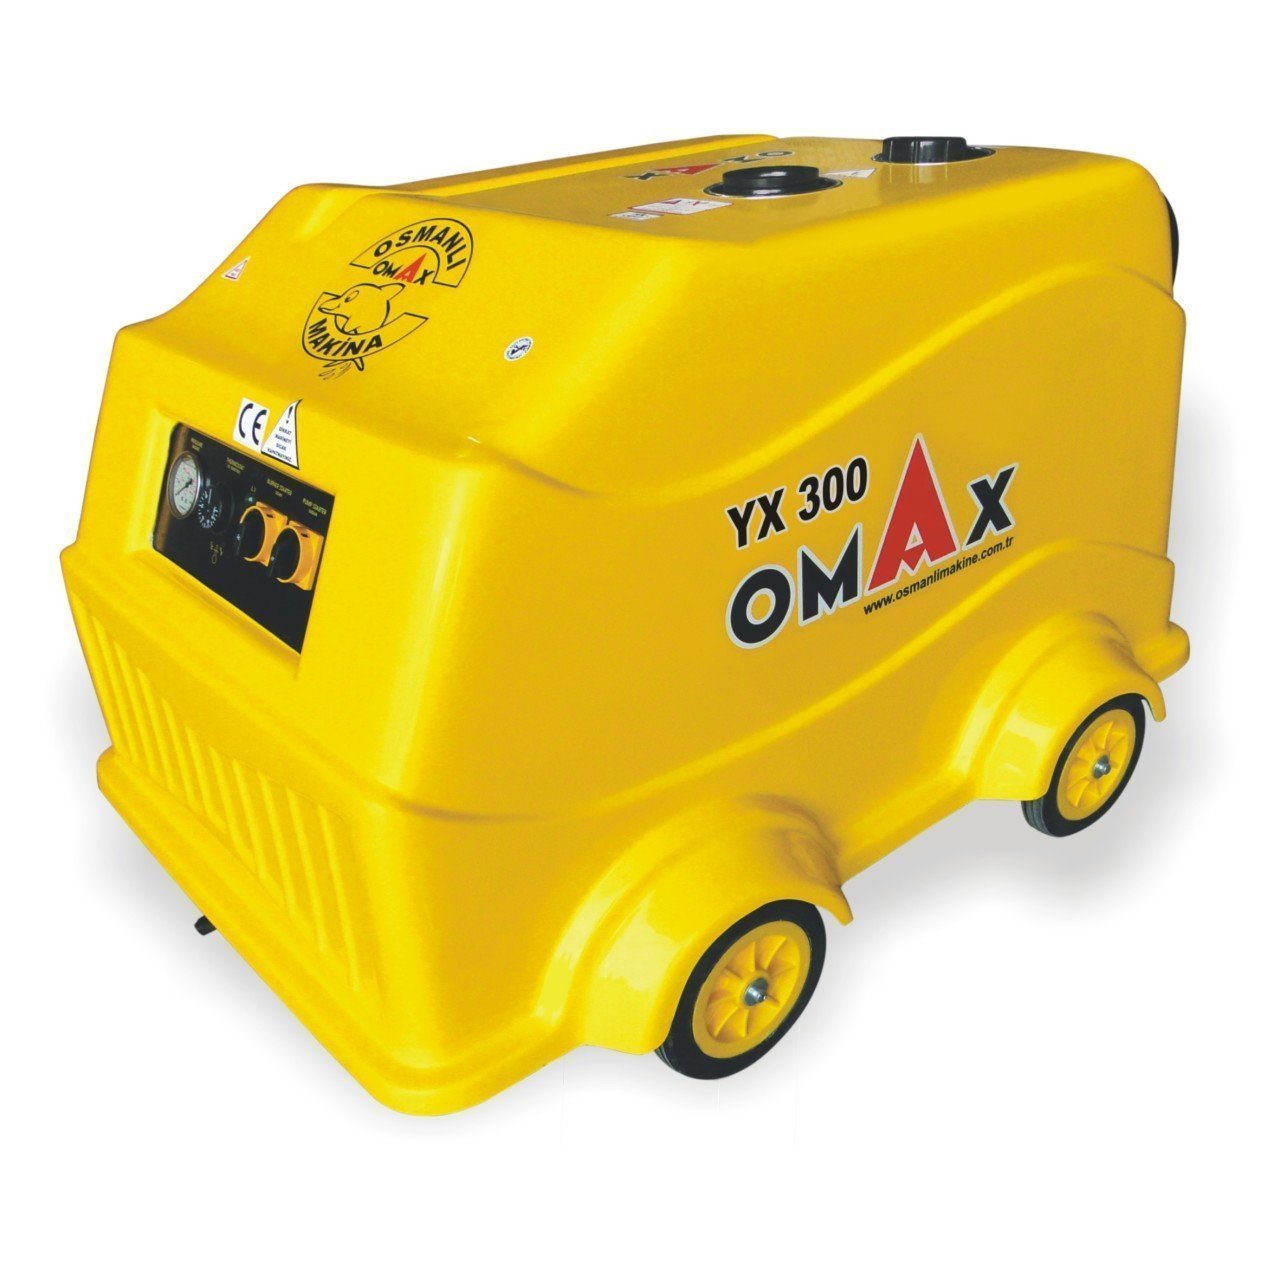 Omax Yx300 Basınçlı Sıcak Soğuk Yıkama Makinesi 300 Bar Mazotlu